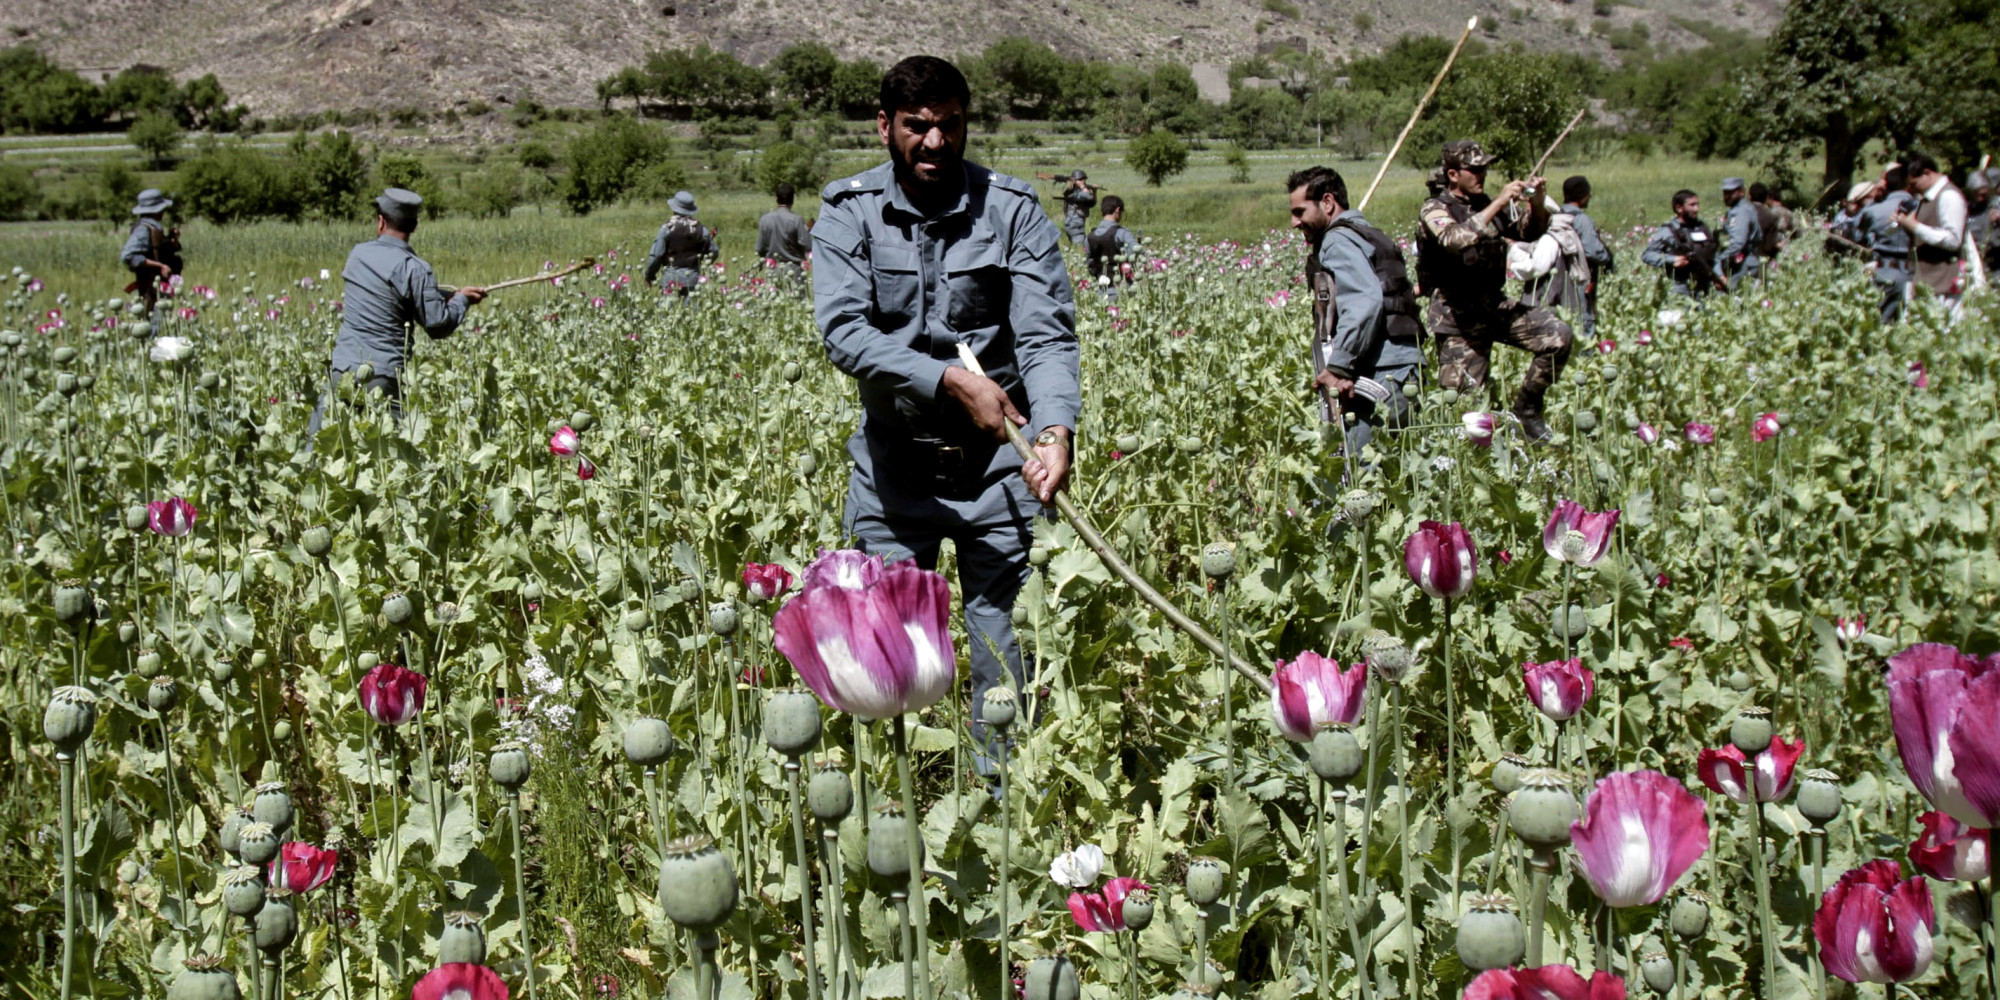 Afghanistan opium trade